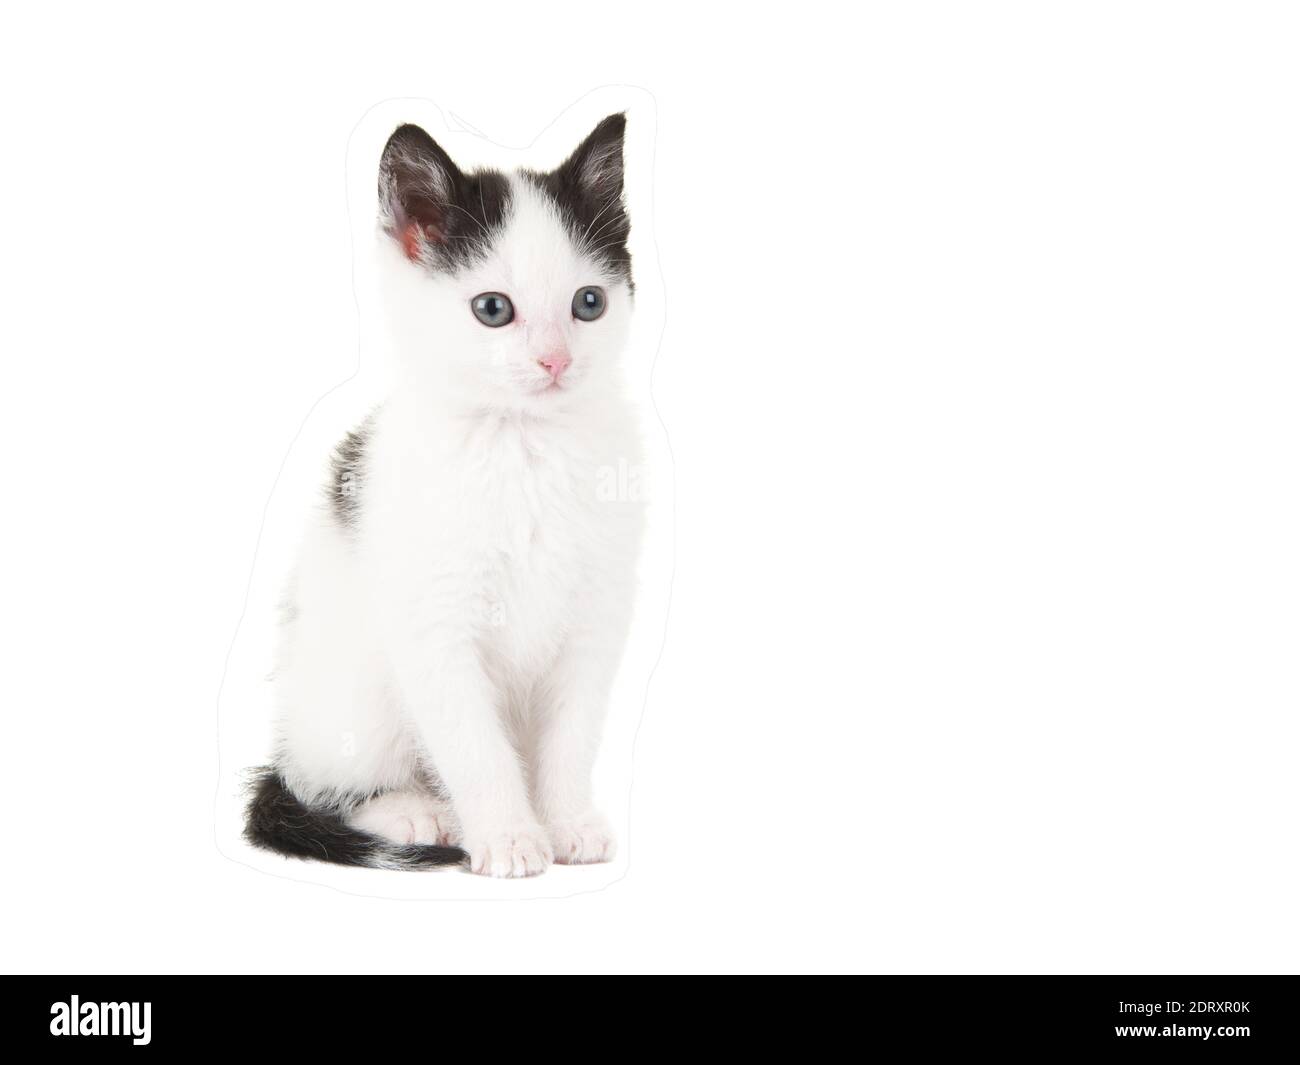 Niedliche Schwarz-Weiß-Baby-Katze Kätzchen sitzt isoliert auf EINEM weißen  Hintergrund Stockfotografie - Alamy